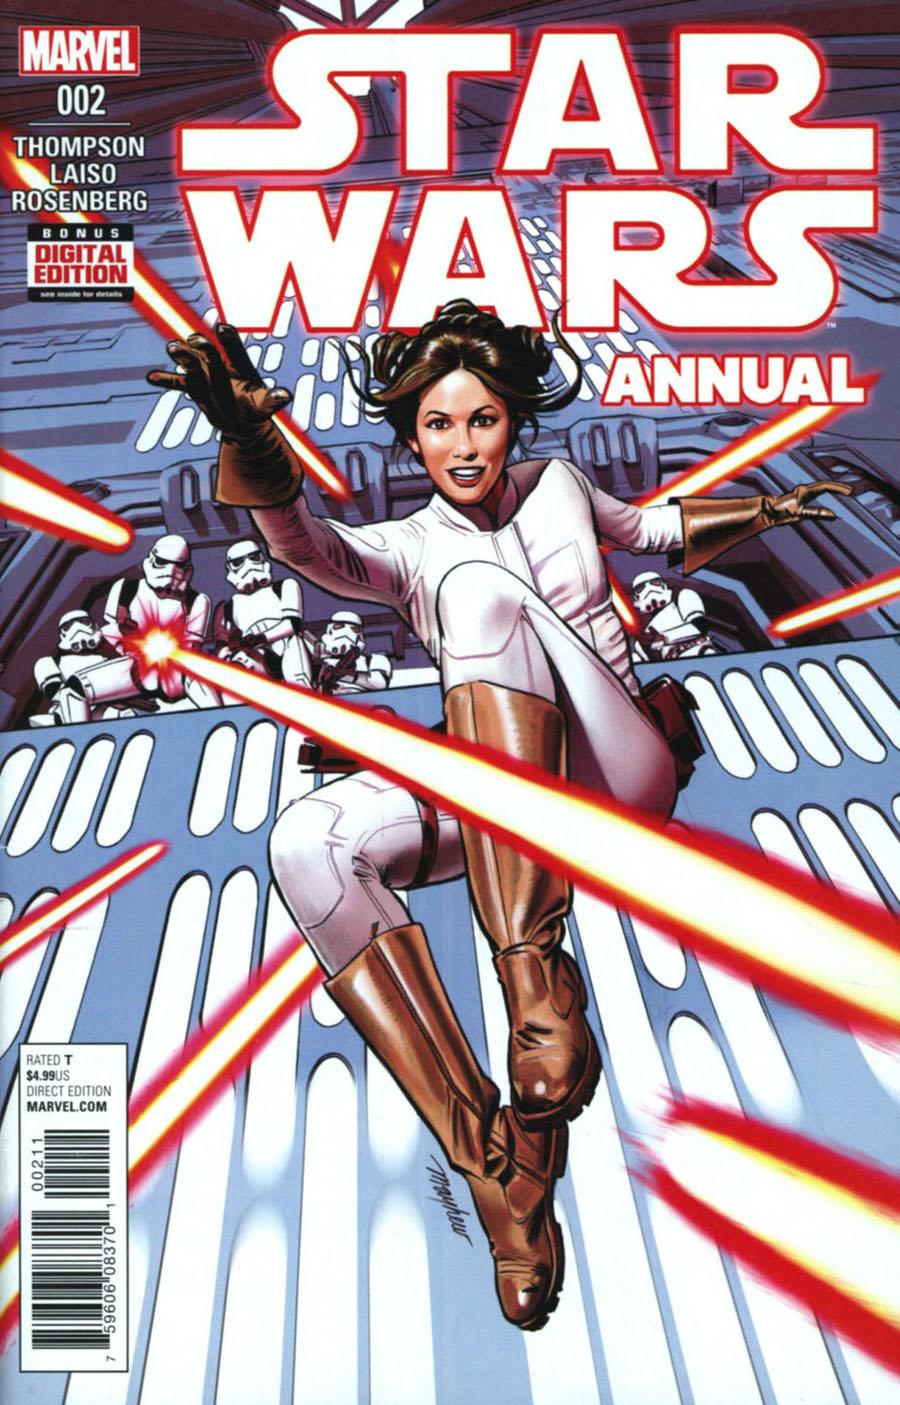 Star Wars (Marvel Comics) Vol. 4 Annual #2